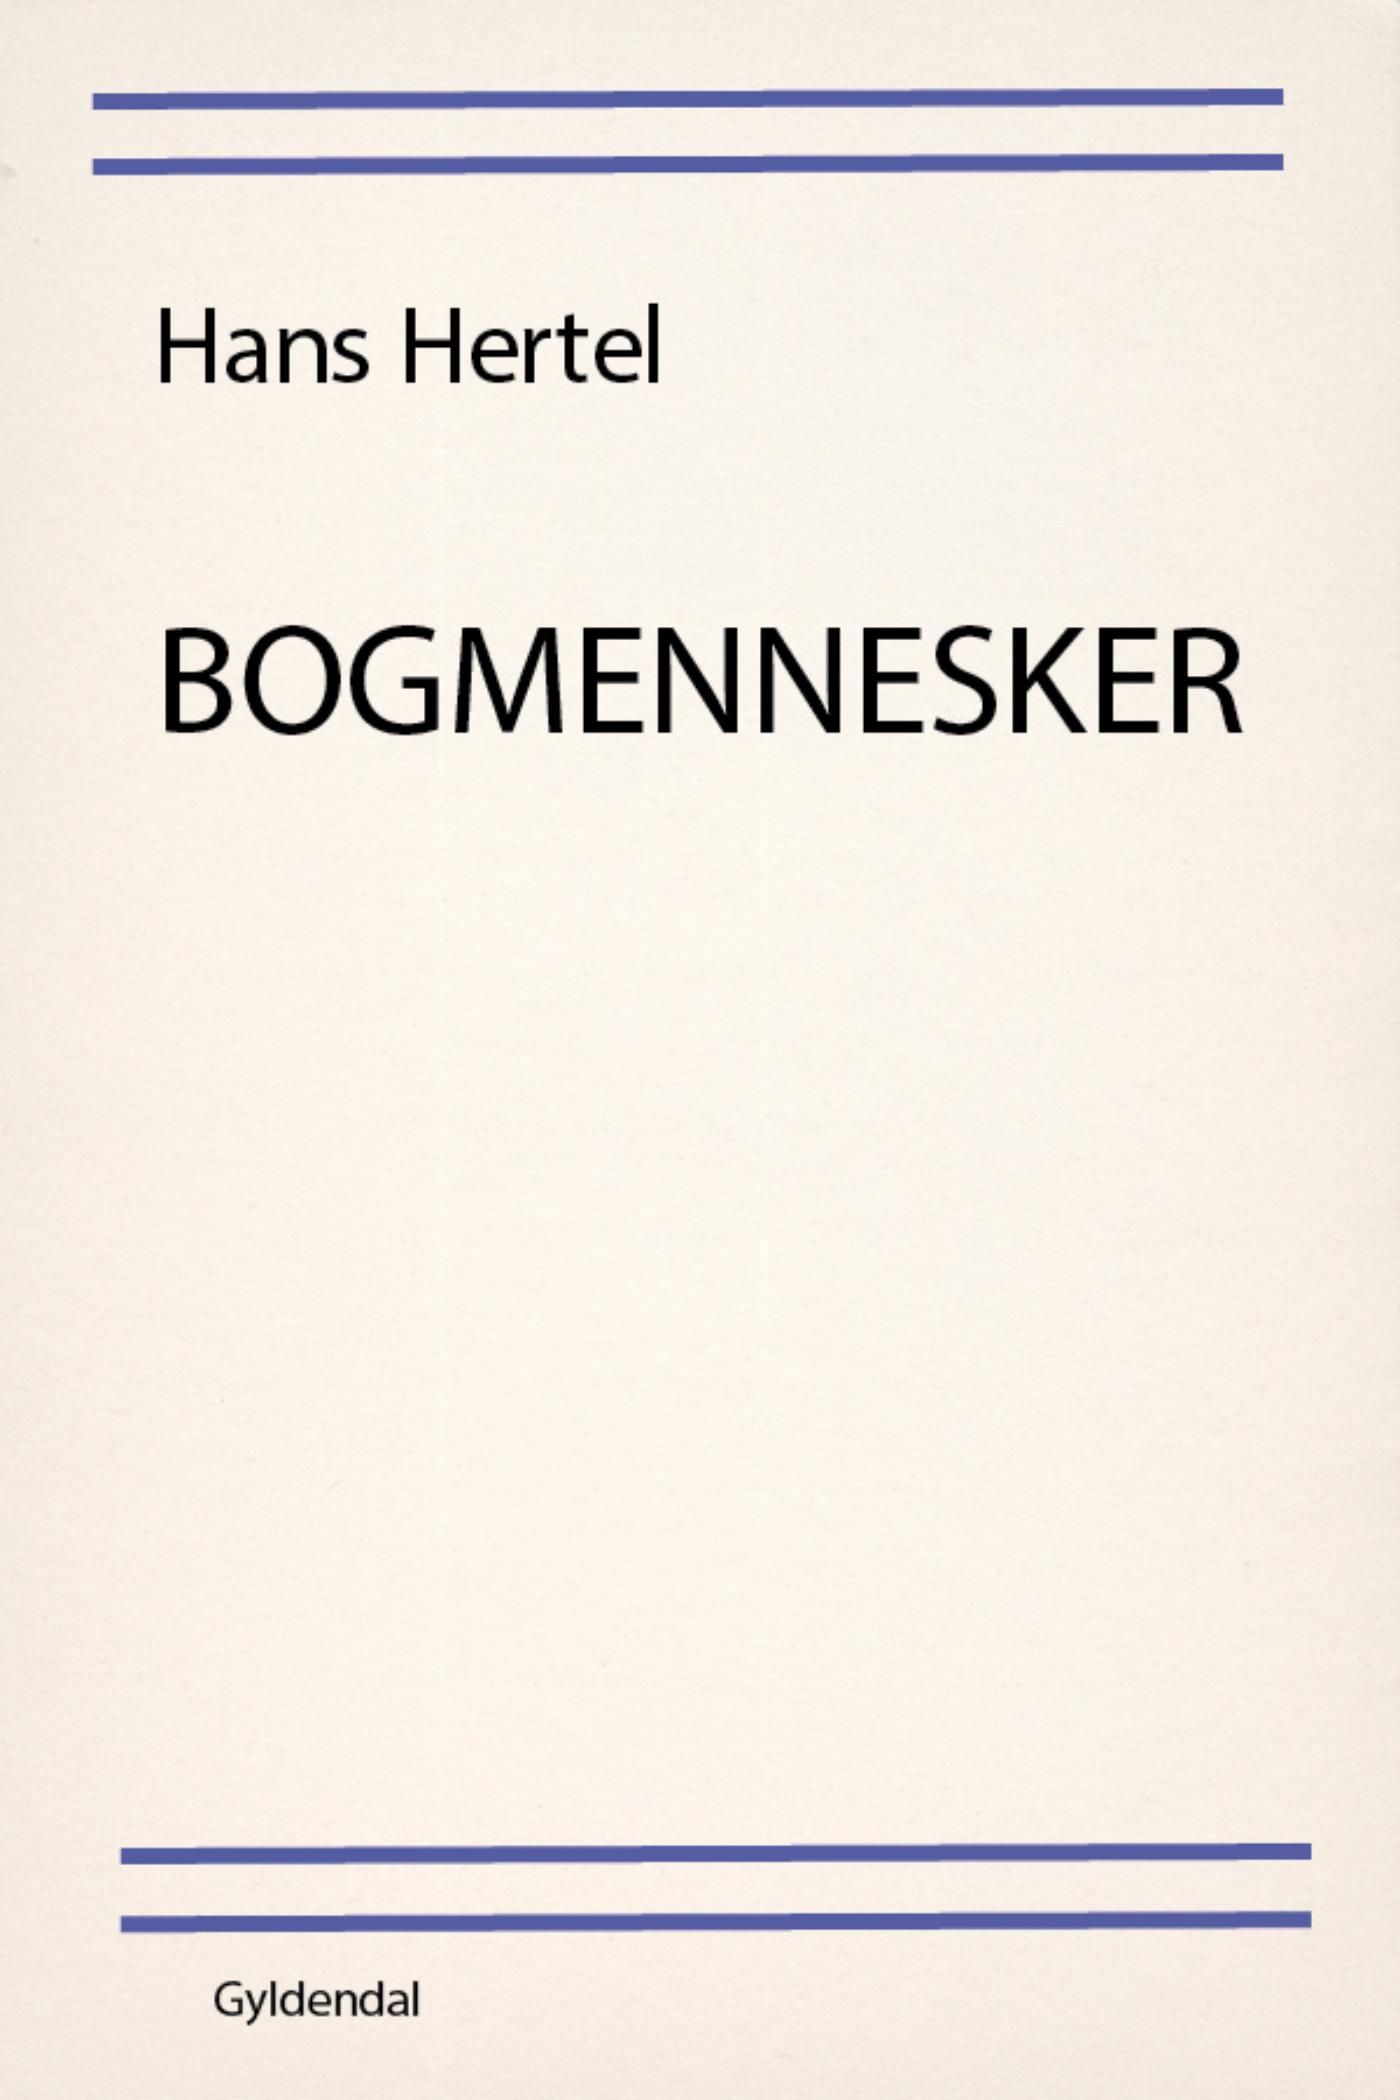 Bogmennesker, eBook by Hans Hertel